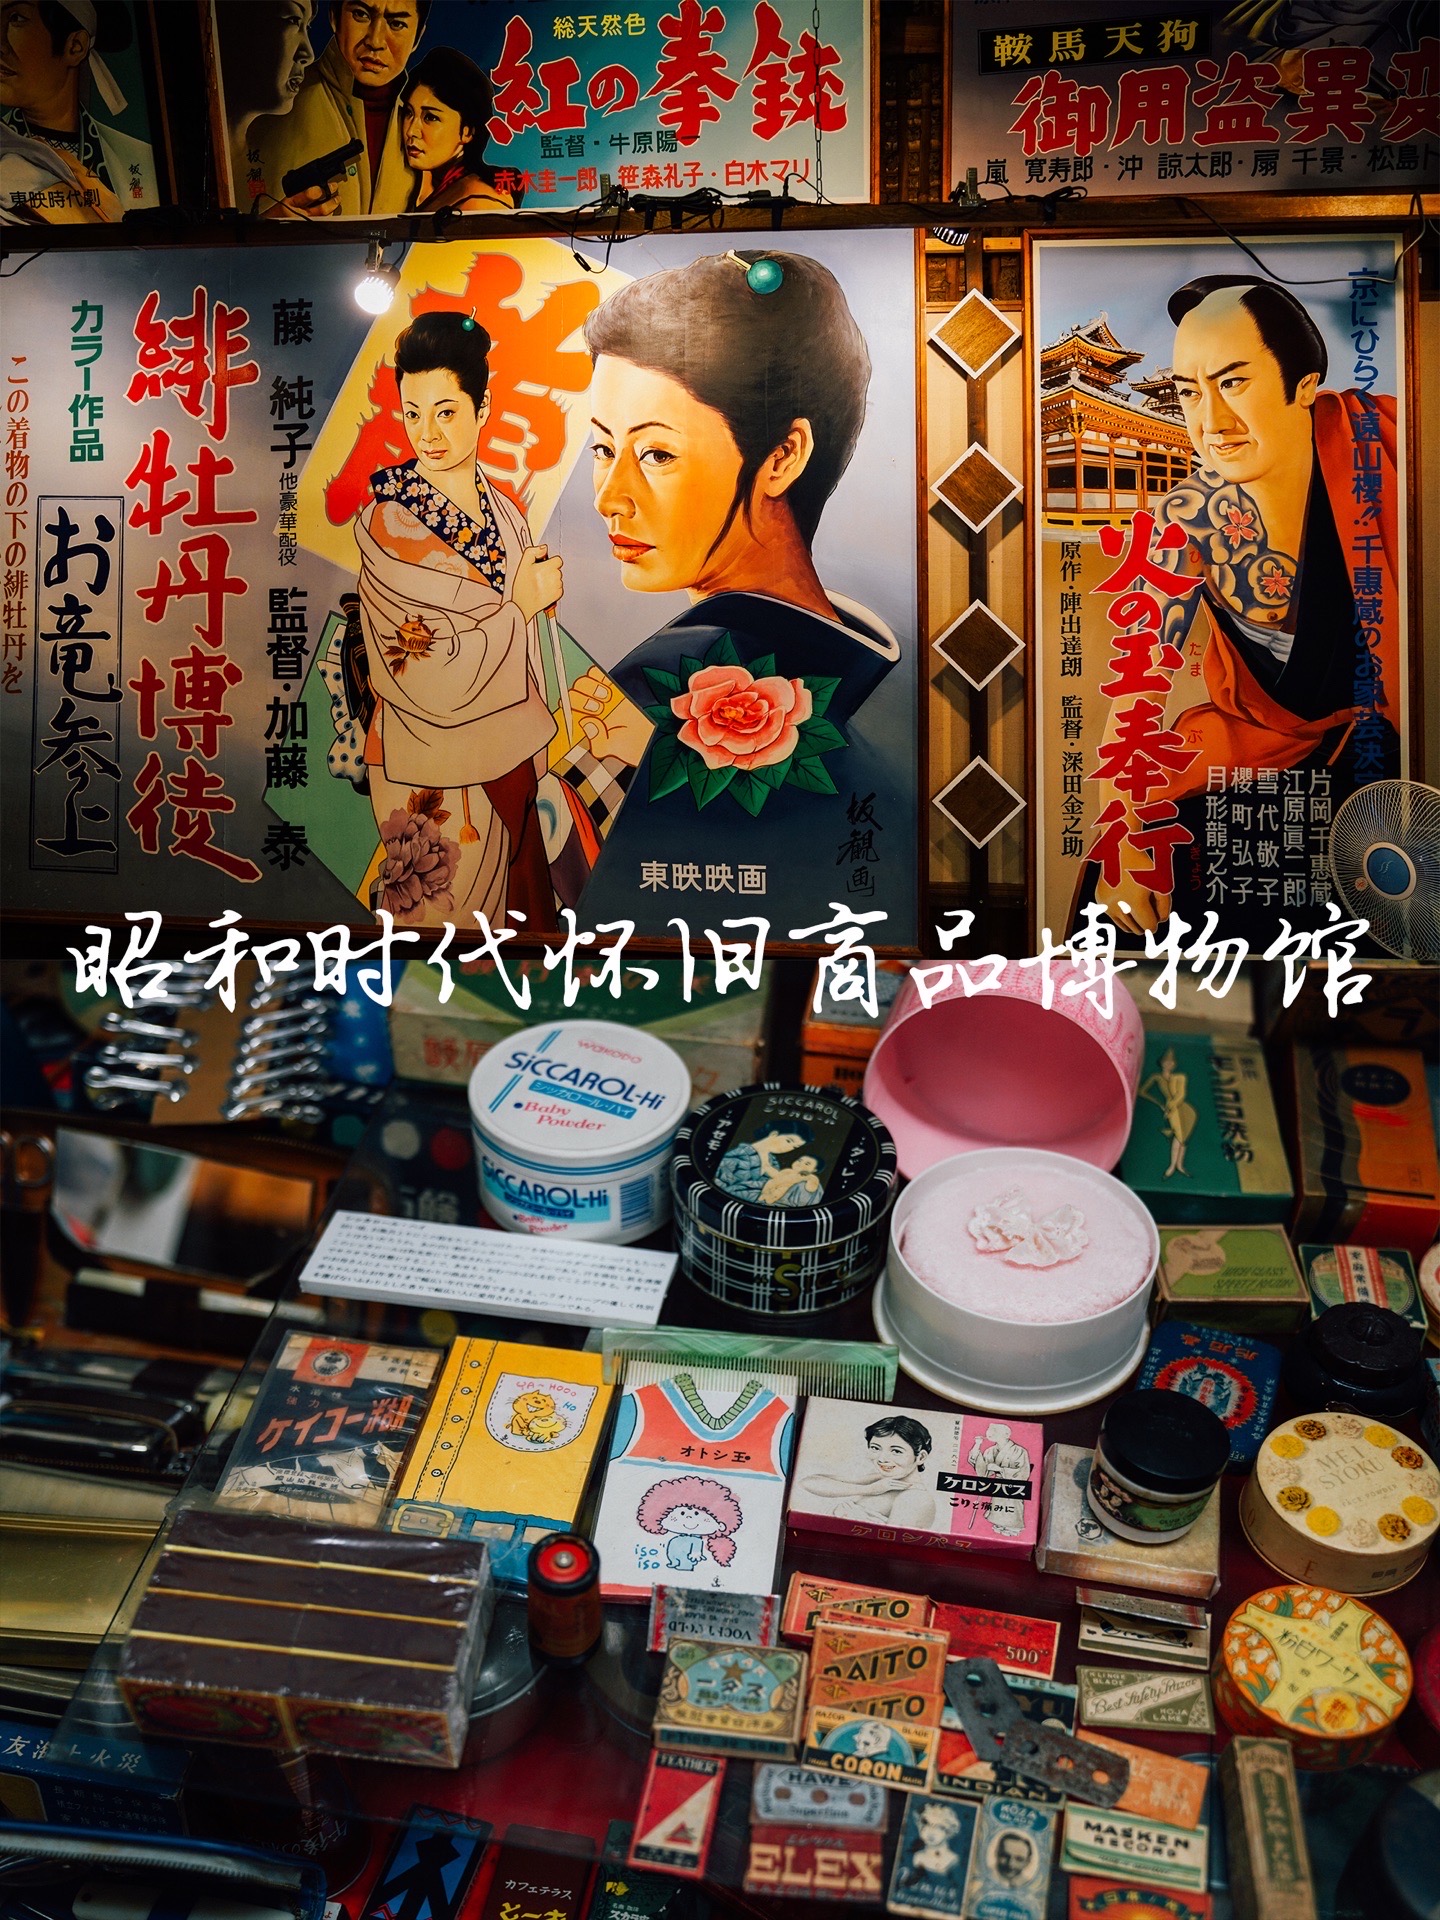 🌟 赤冢不二夫会馆旁边的昭和时代（1926年12月25日—1989年1月7日）怀旧商品博物馆，则是让